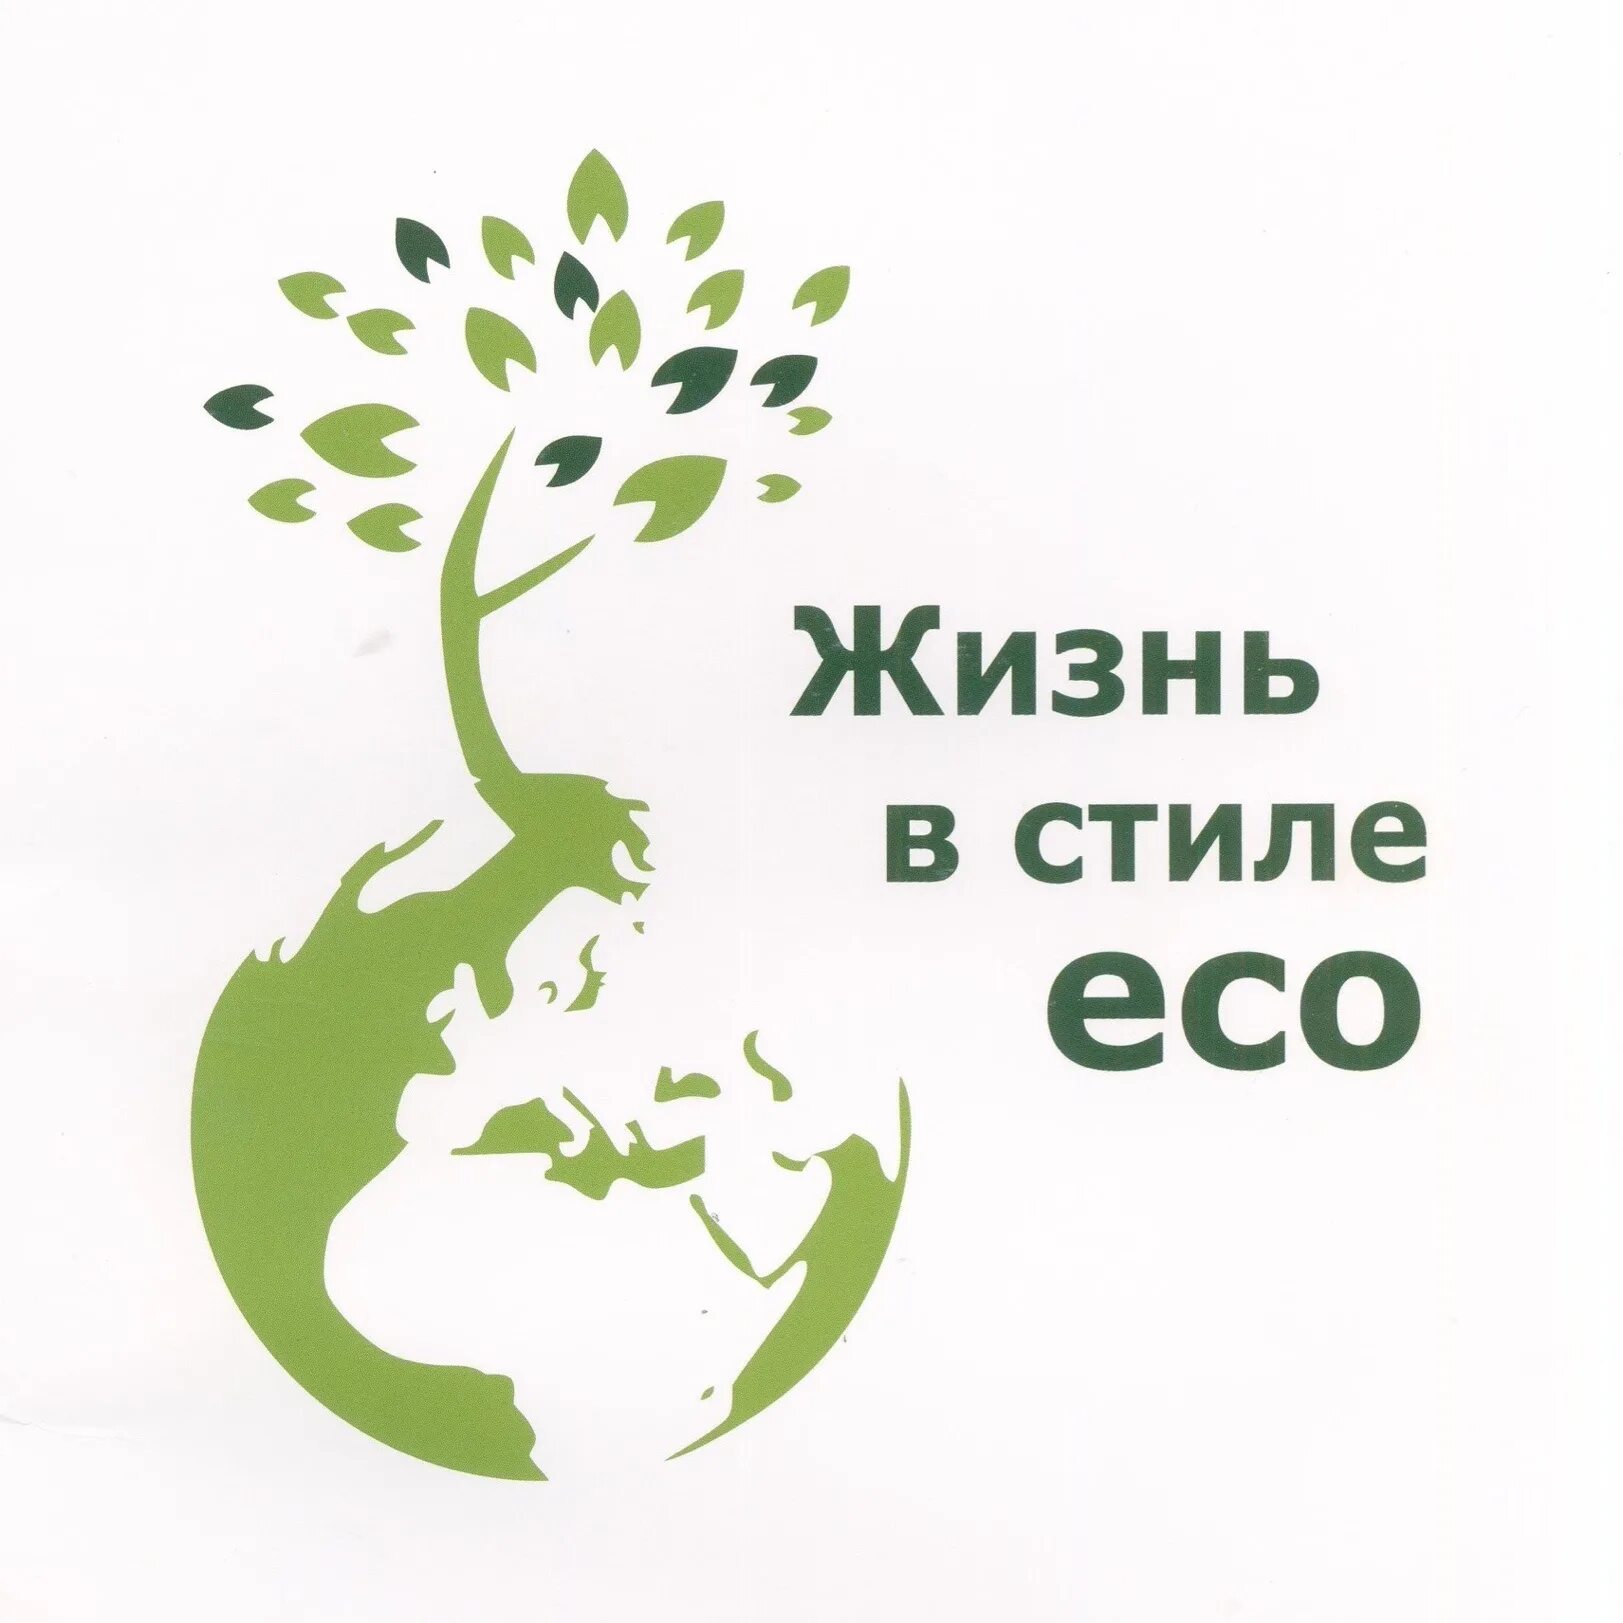 Жизнь в стиле эко. Экологические лозунги. Эко экология. Жить в стиле эко.